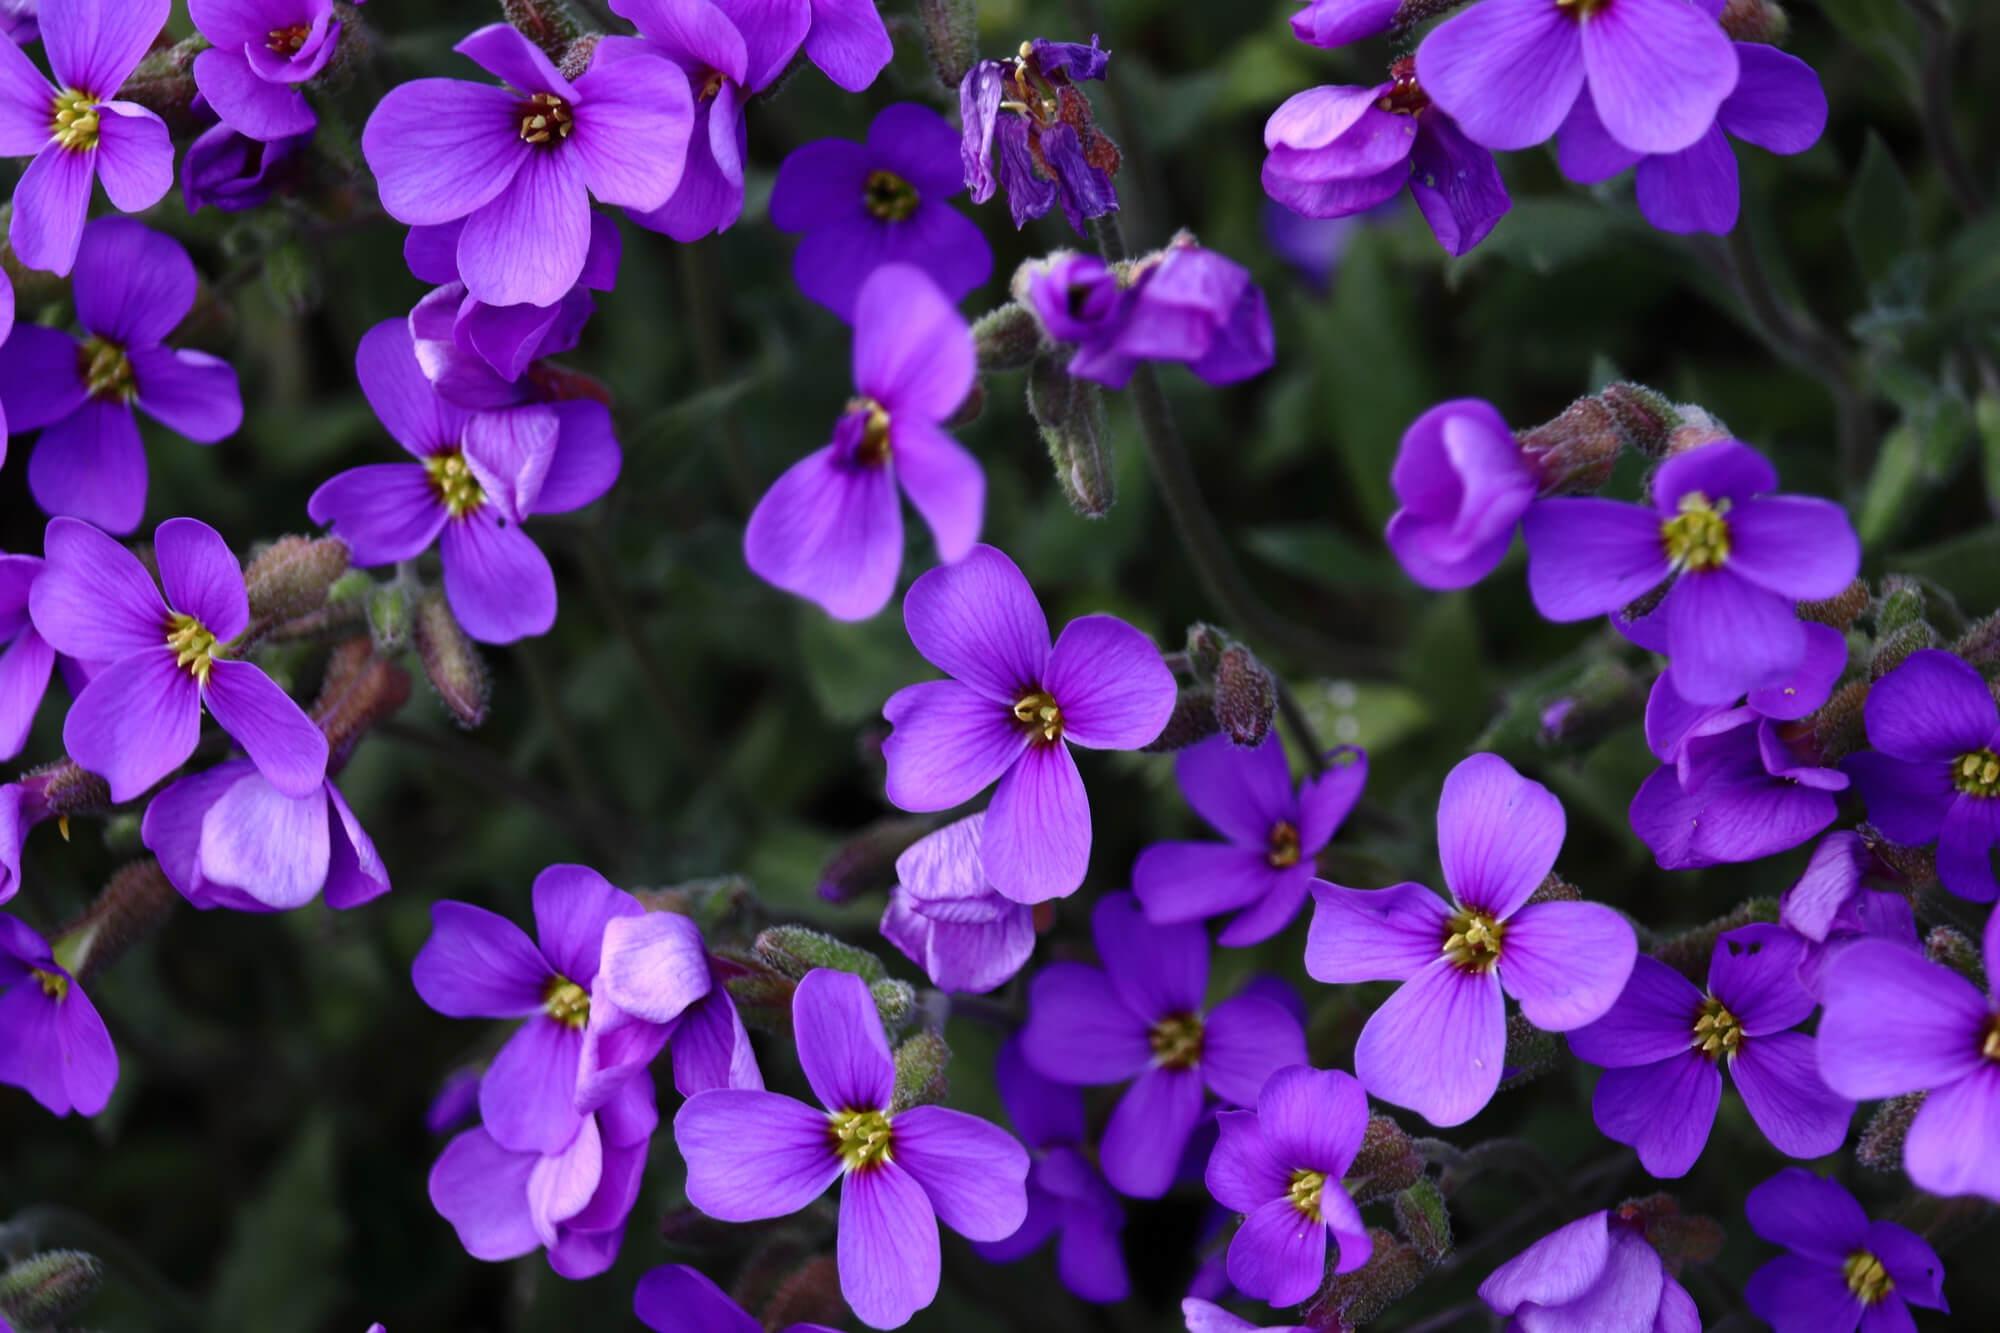 Foto de violetas